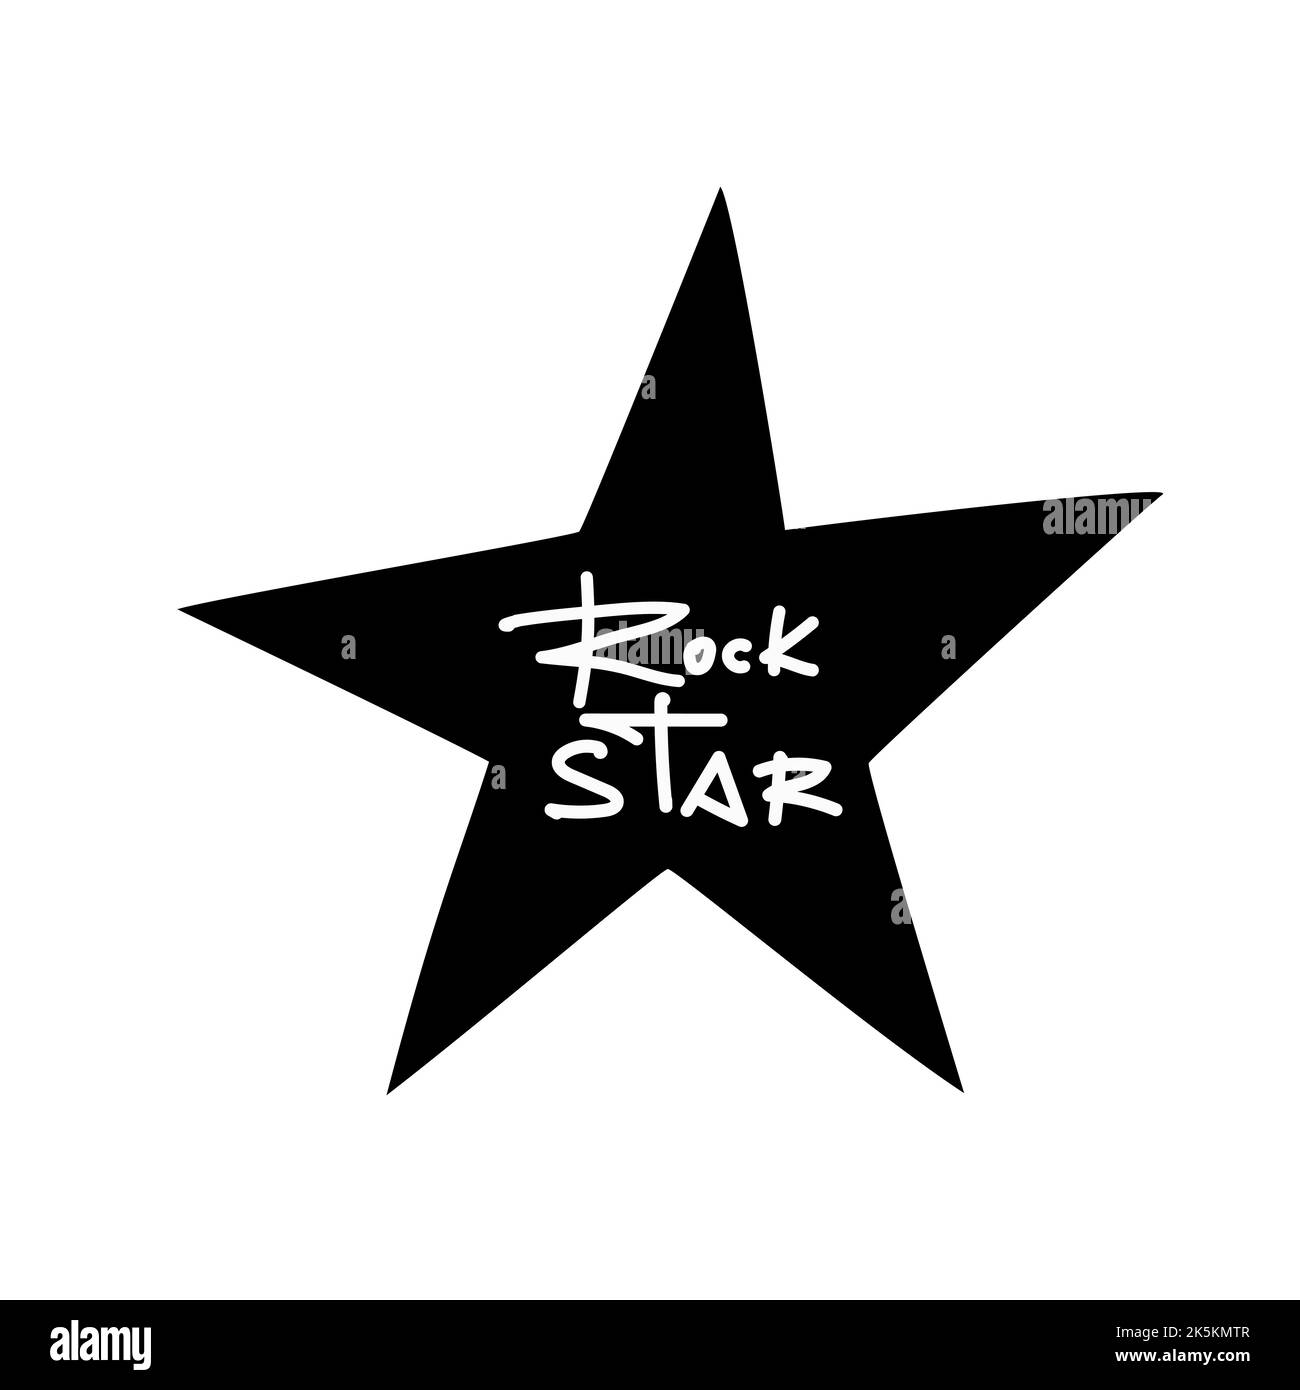 Isolierter weißer Rockstar-Graffiti-Tag auf einem schwarzen Stern. Vektorgrafik. Stock Vektor